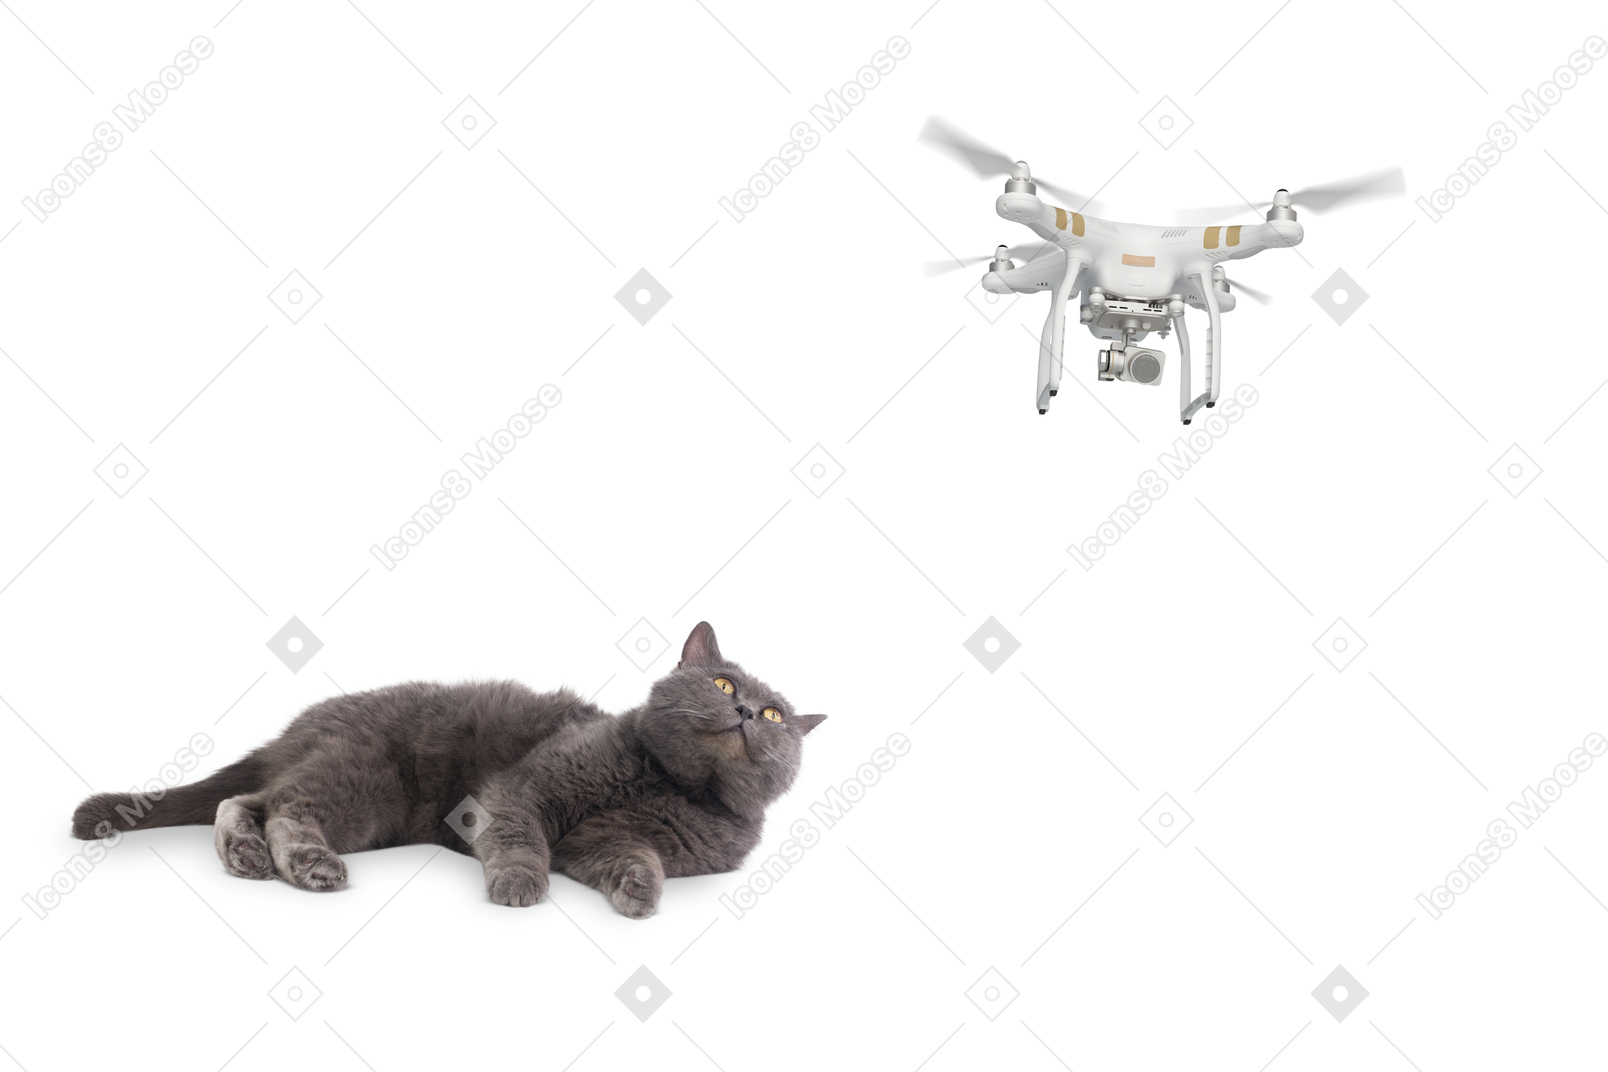 Gato rabugento assistindo um drone voador